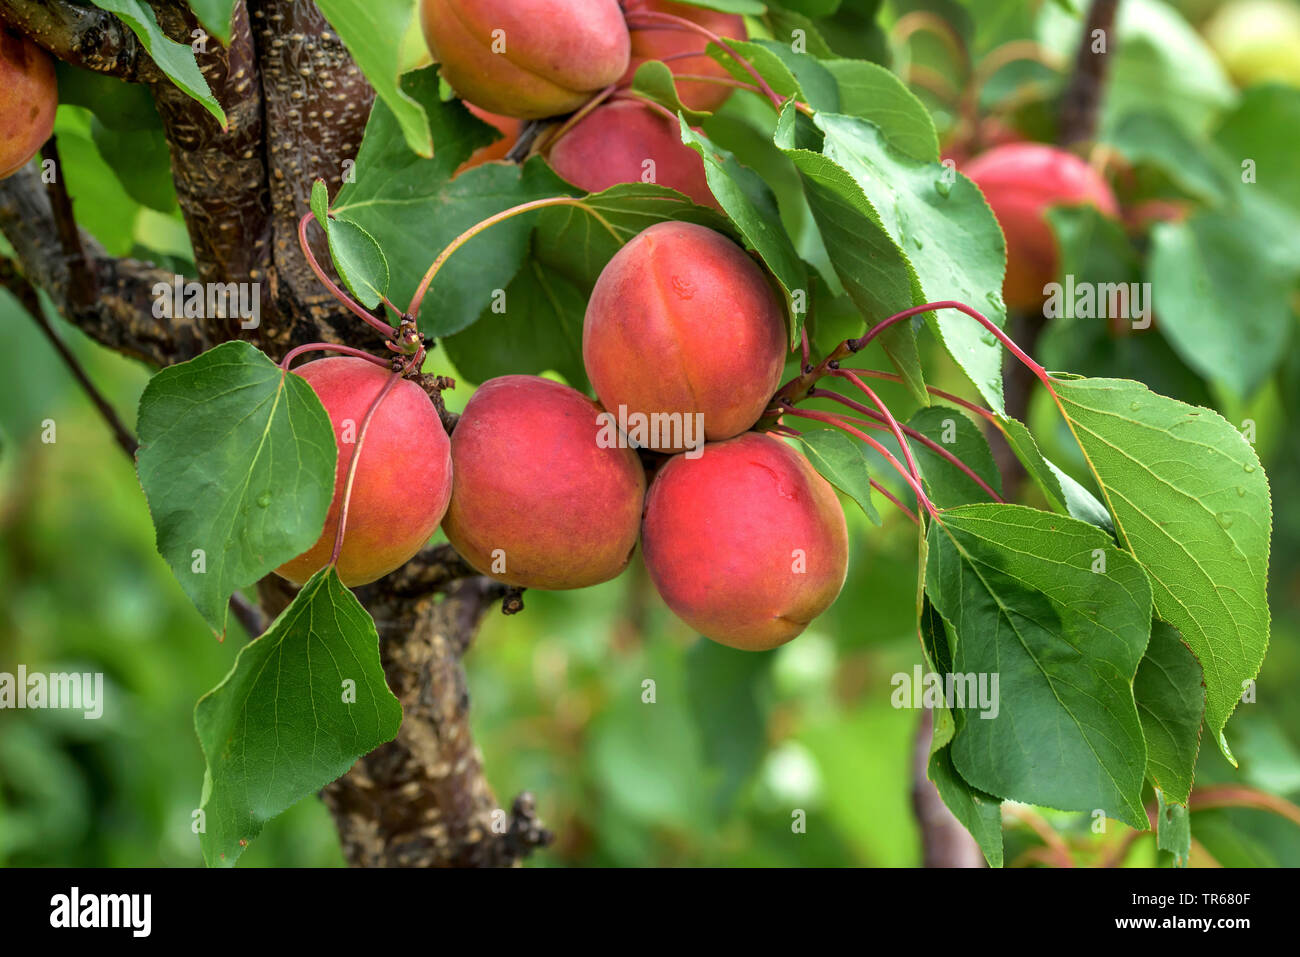 Albero di albicocche (Prunus armeniaca 'Bergarouge', Prunus armeniaca Bergarouge), albicocche su un albero, cultivar Bergarouge Foto Stock